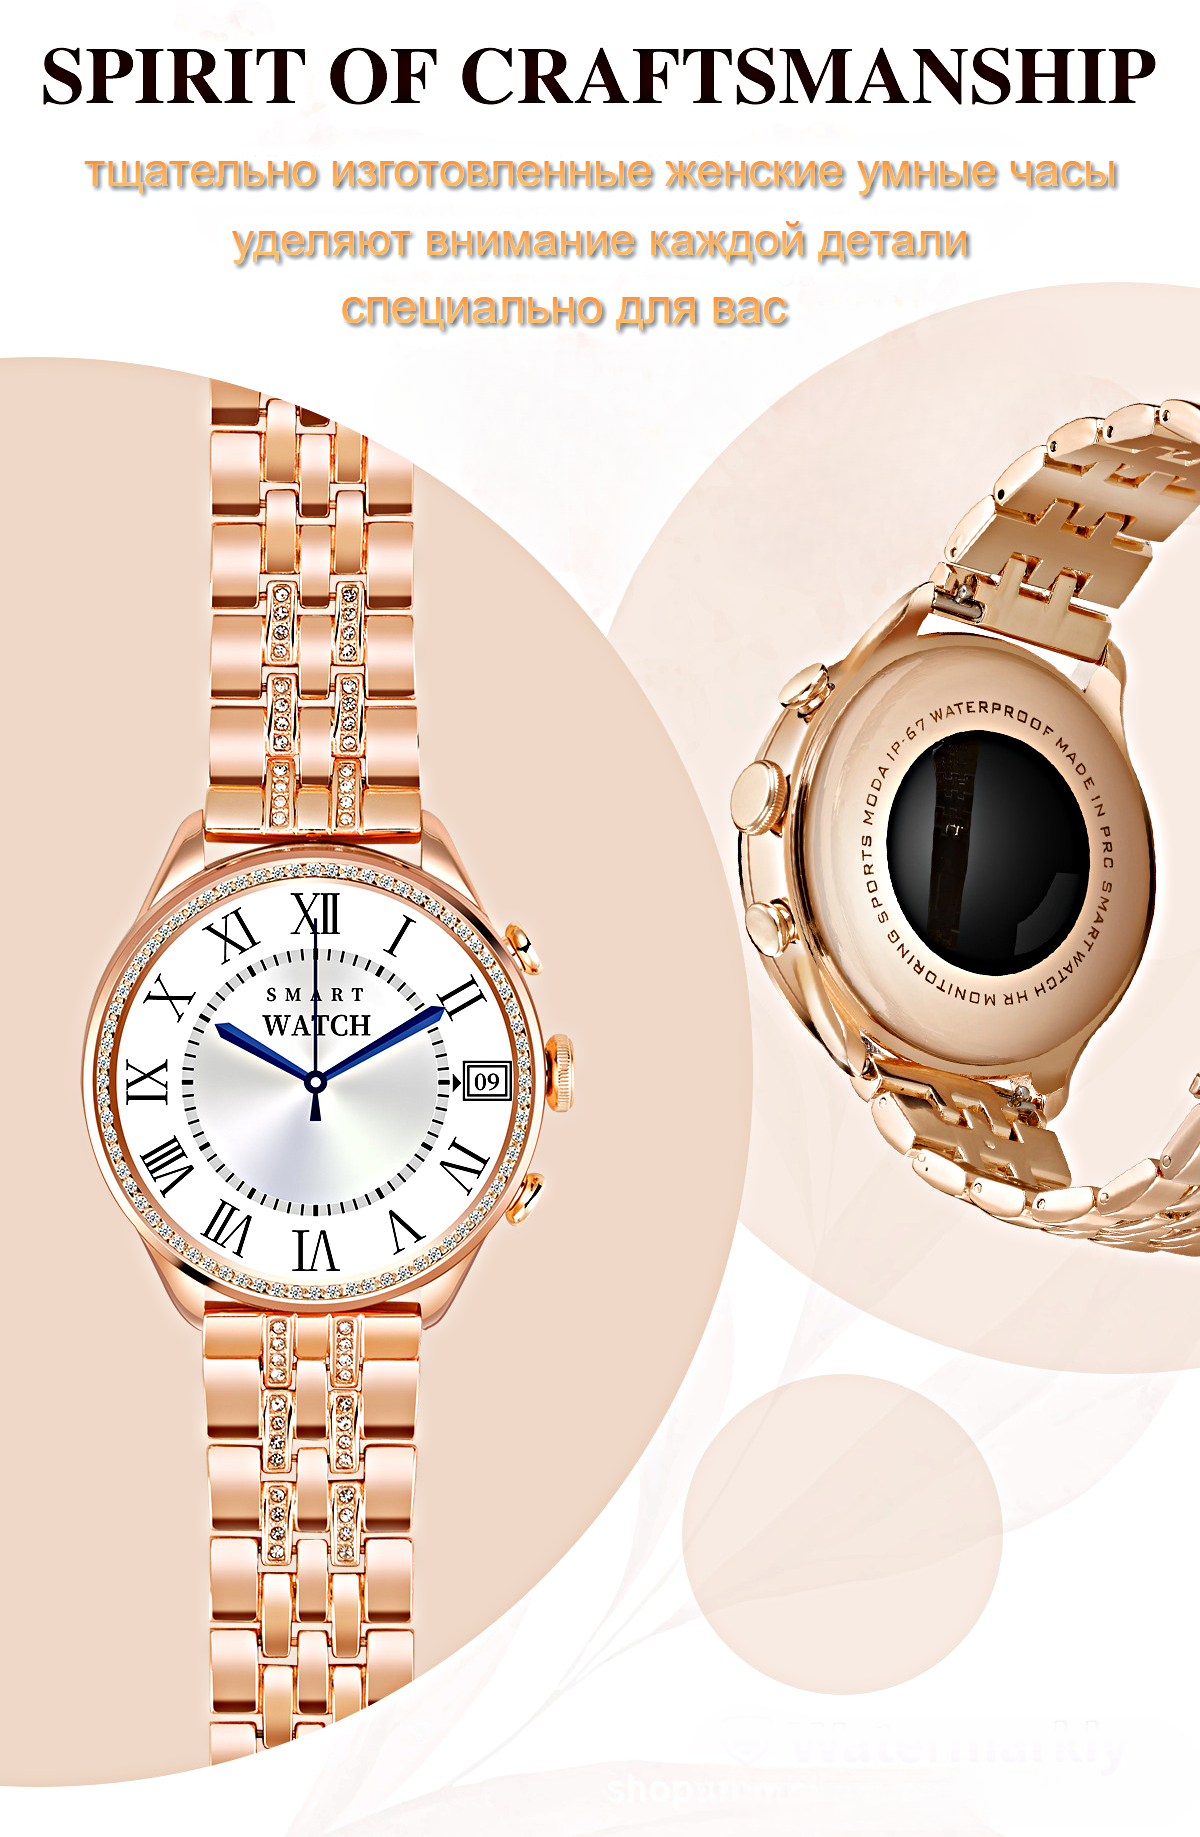 Умные часы женские Smart Watch GEN 9 Смарт-часы для женщин 2023 iOS Android Bluetooth звонки 2 ремешка WinStreak